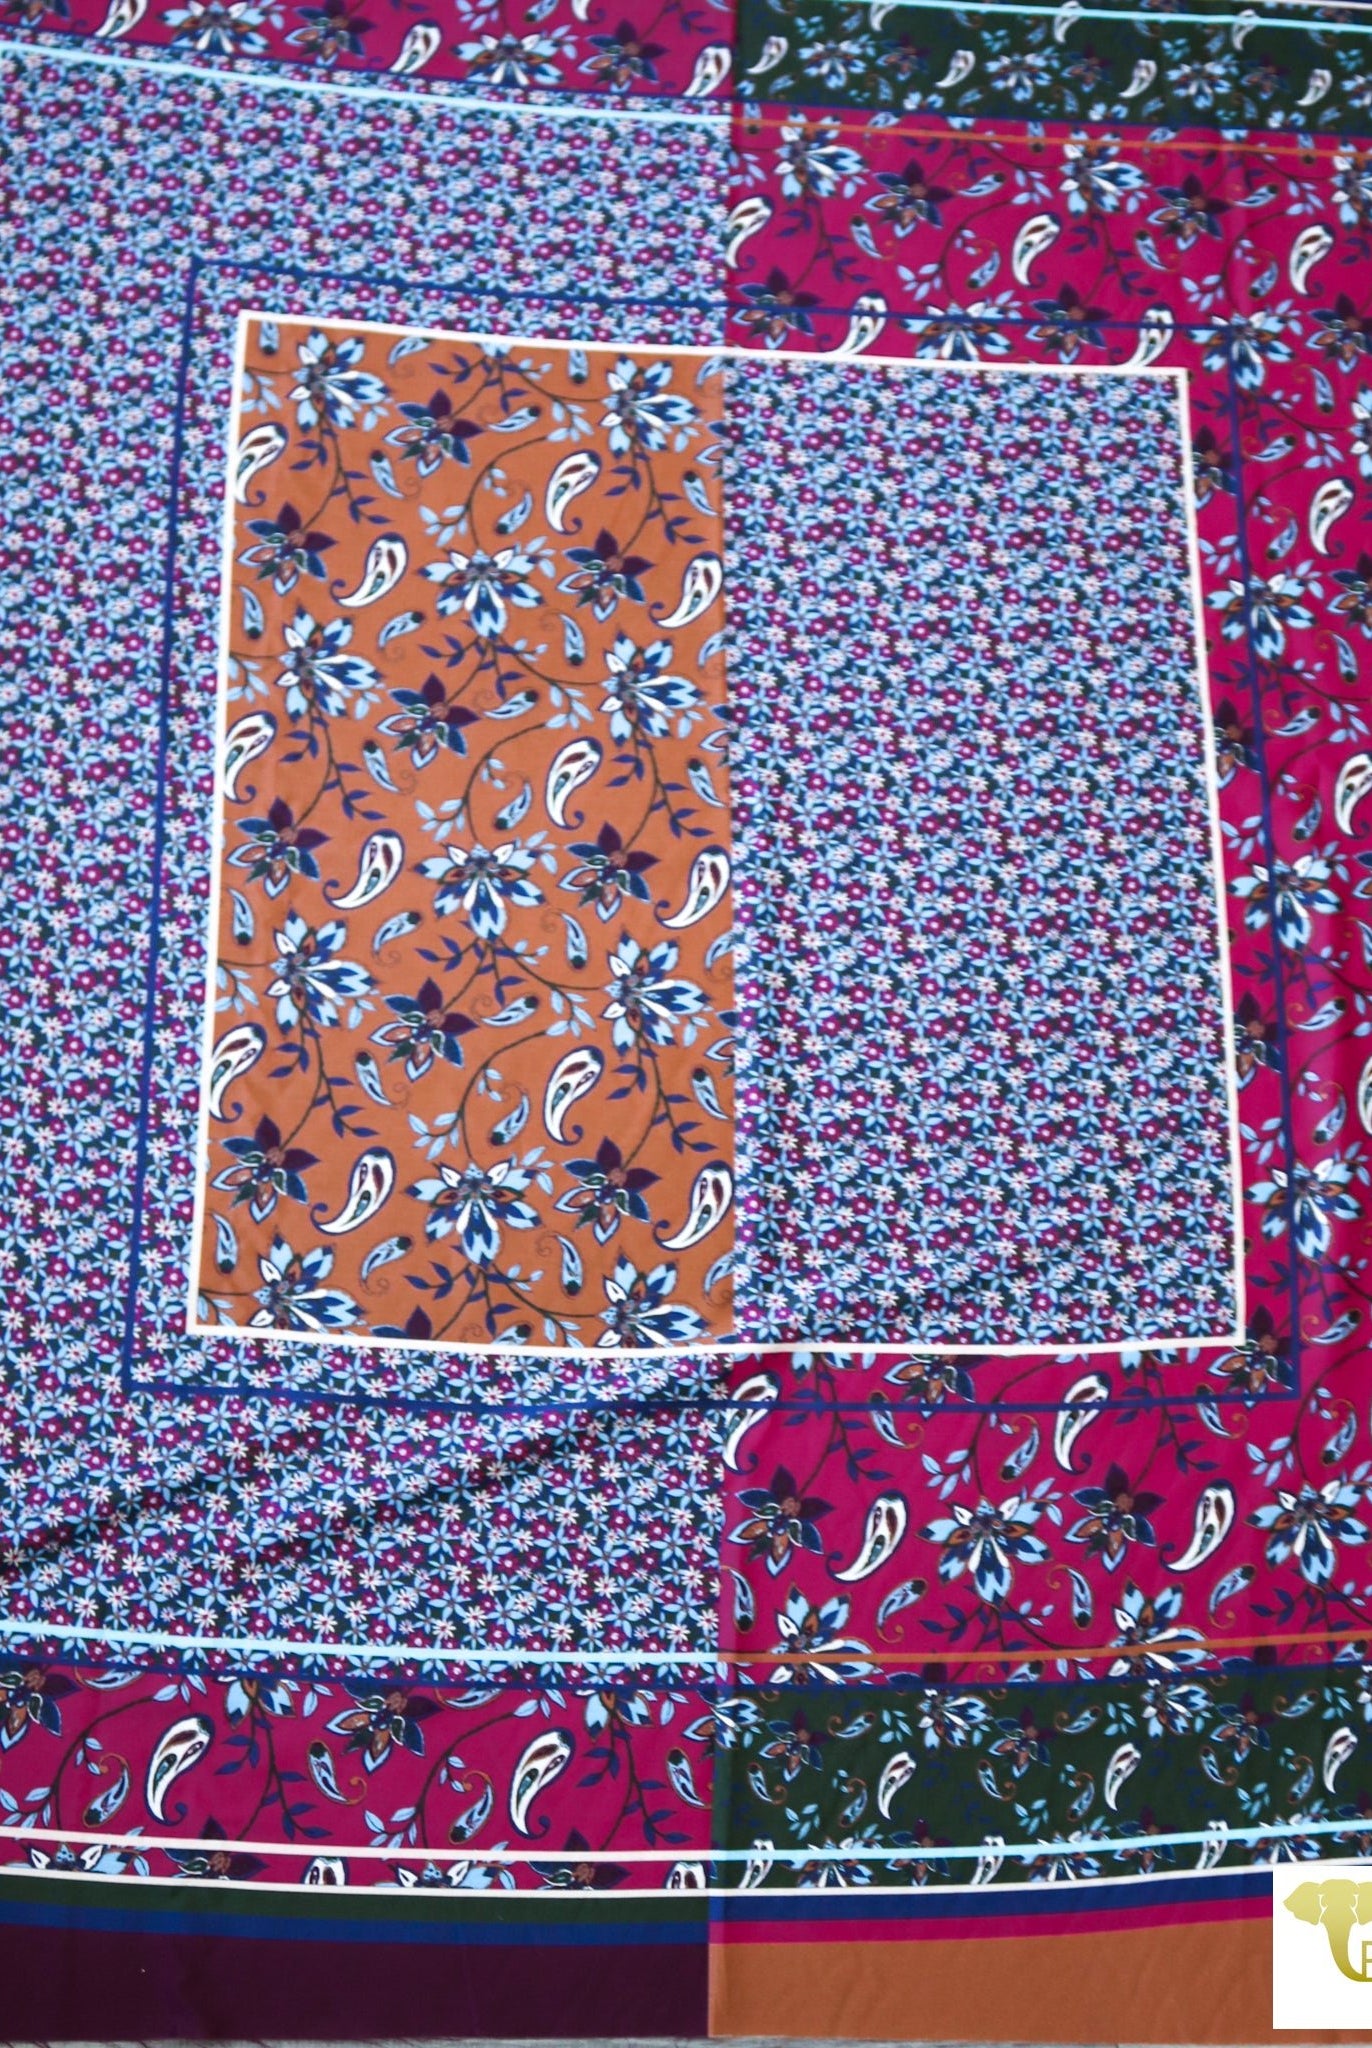 Jewel Palace Paisley. Cotton/Silk Panel Woven SILK-130-PANEL - Boho Fabrics